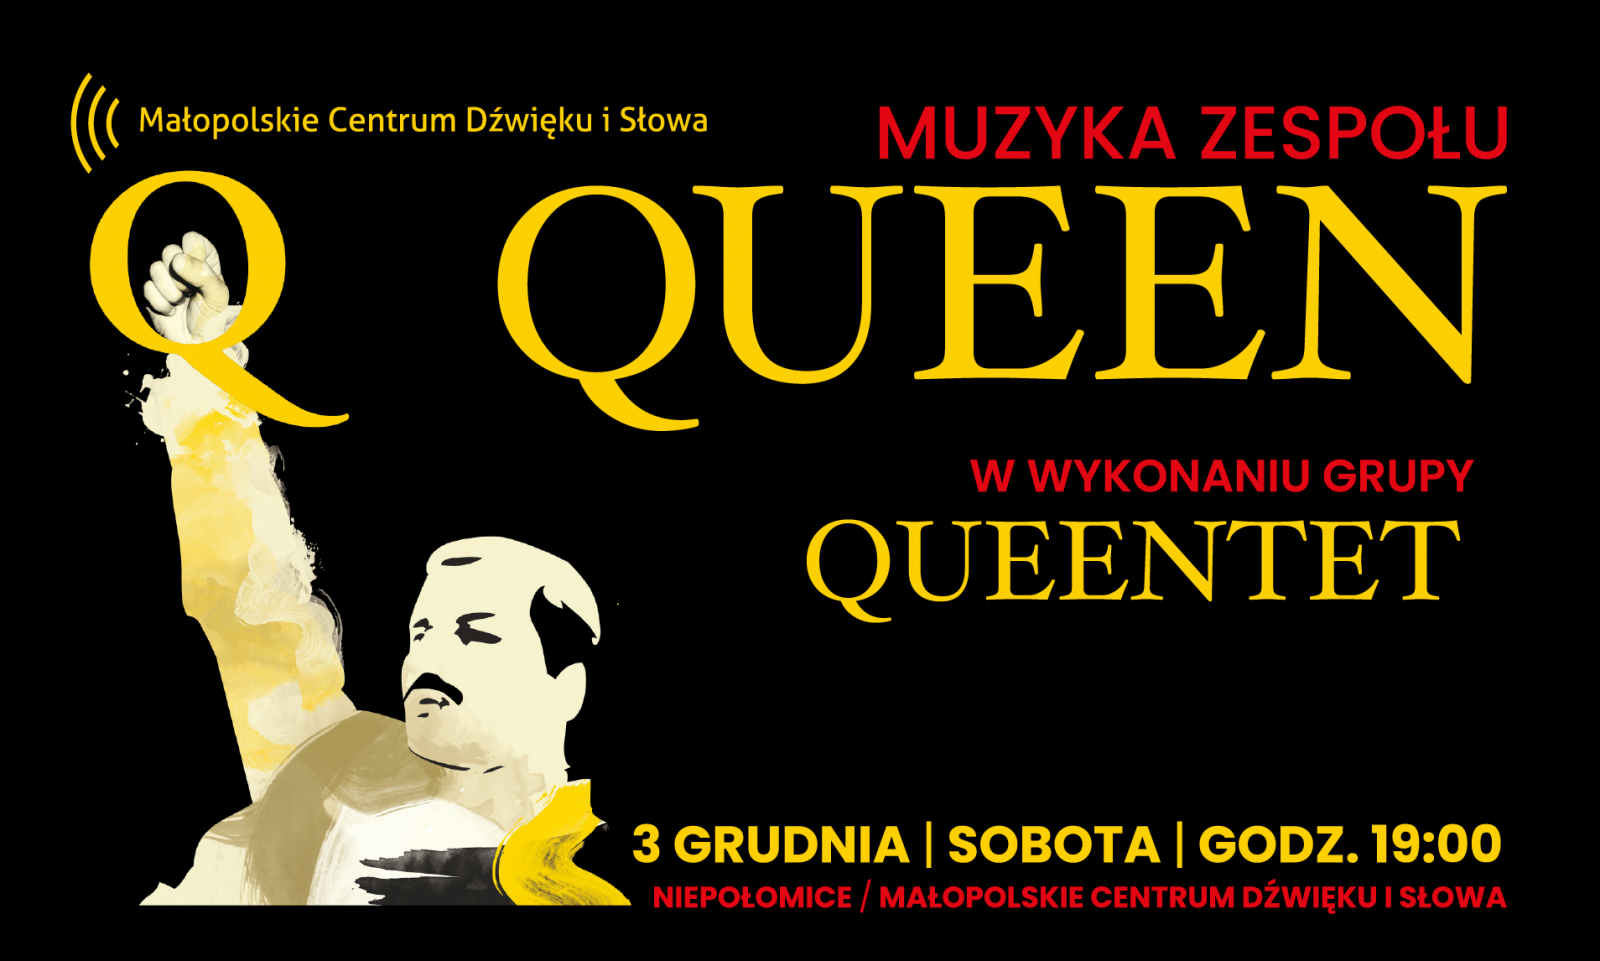 Muzyka zespołu Queen w wykonaniu grupy Queentet